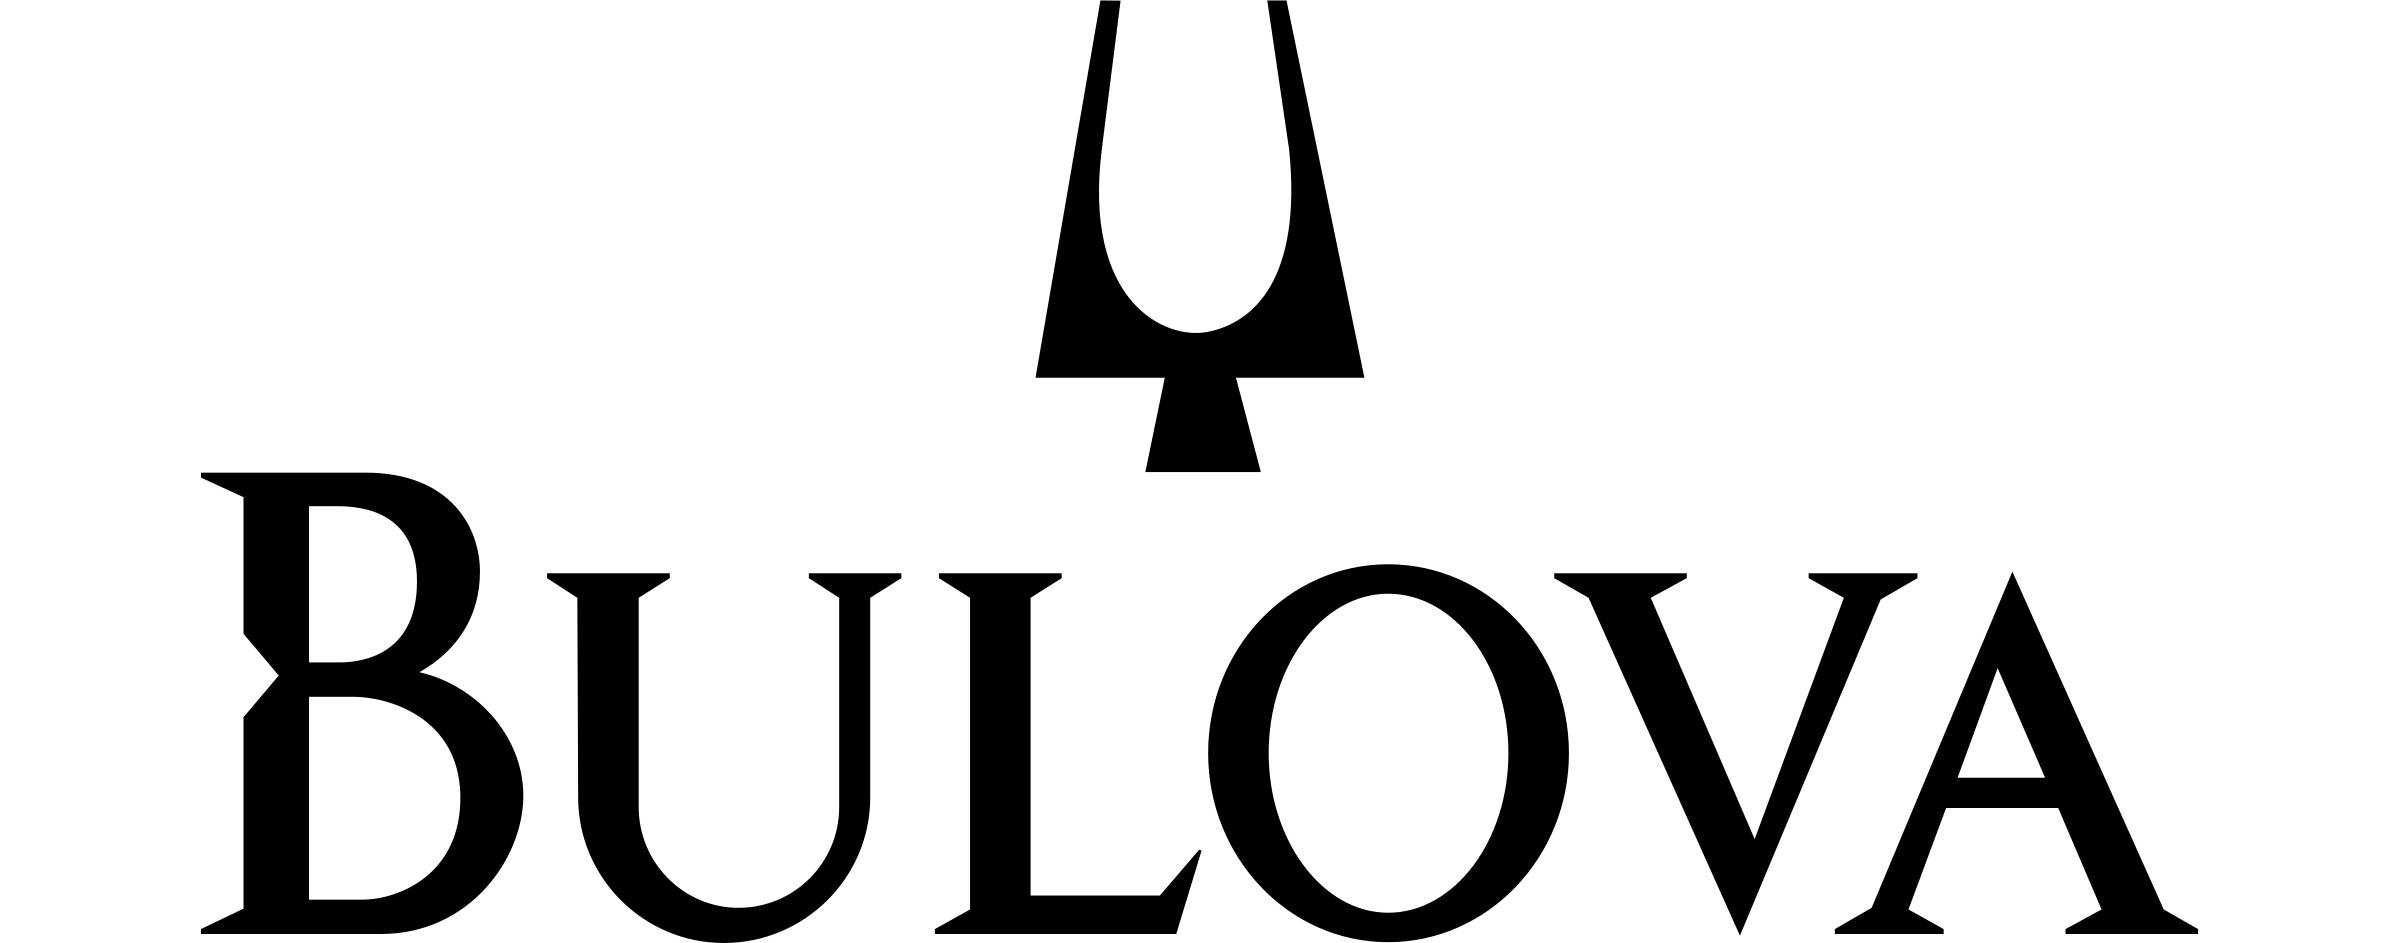 Bulova Watch Company – powstanie, historia i dokonania marki